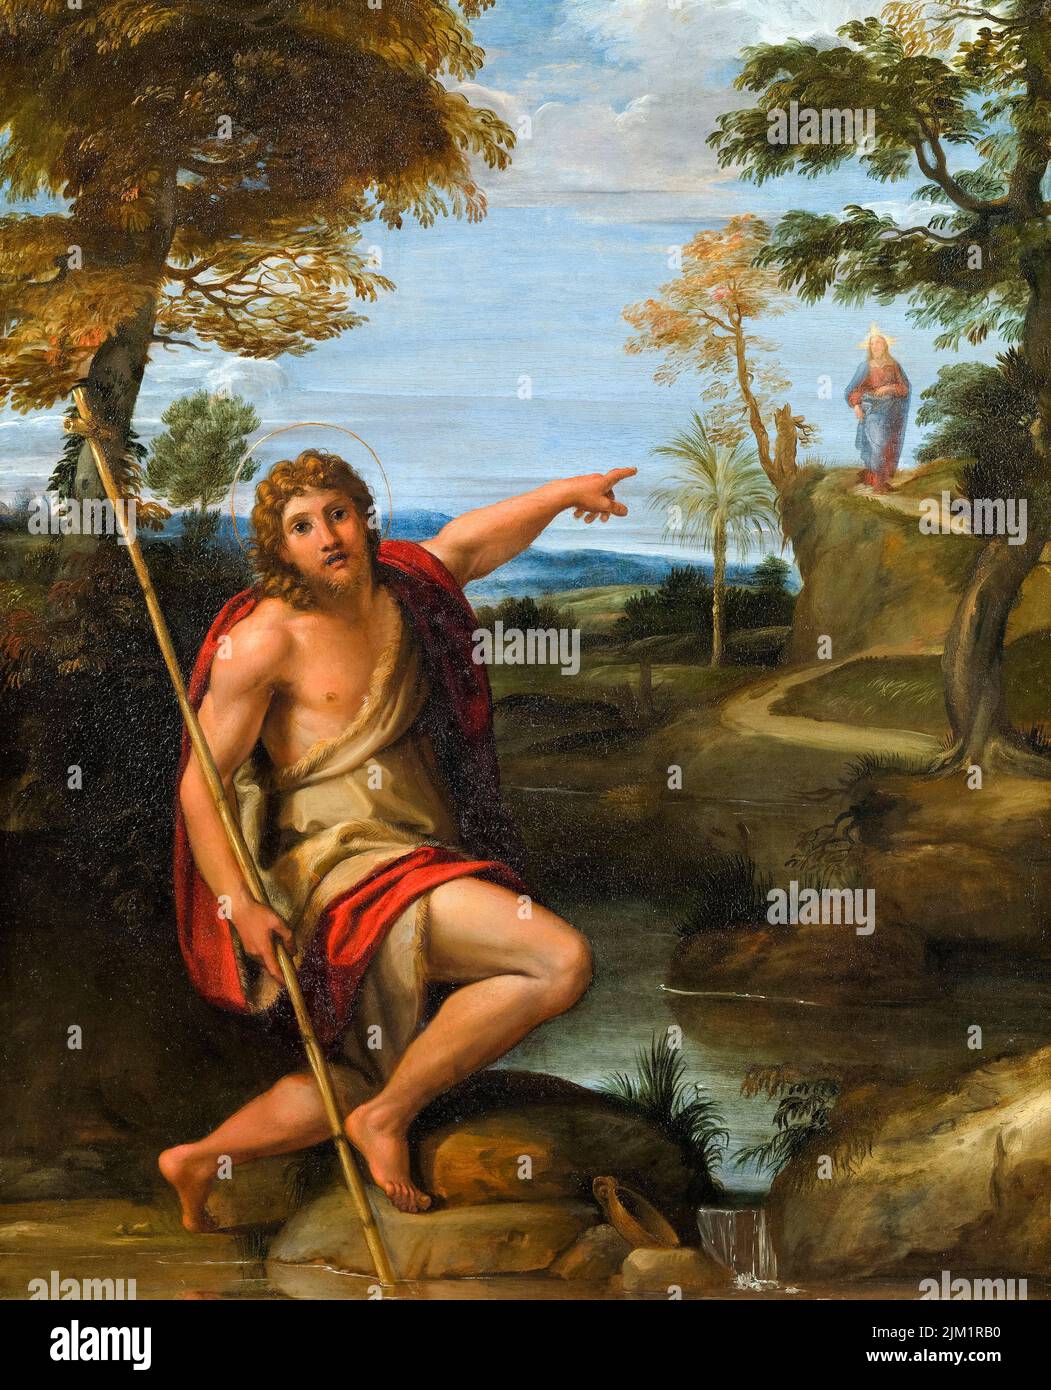 Saint John le Baptist Bearing Witness, peinture à l'huile sur cuivre par Annibale Carracci, vers 1600 Banque D'Images